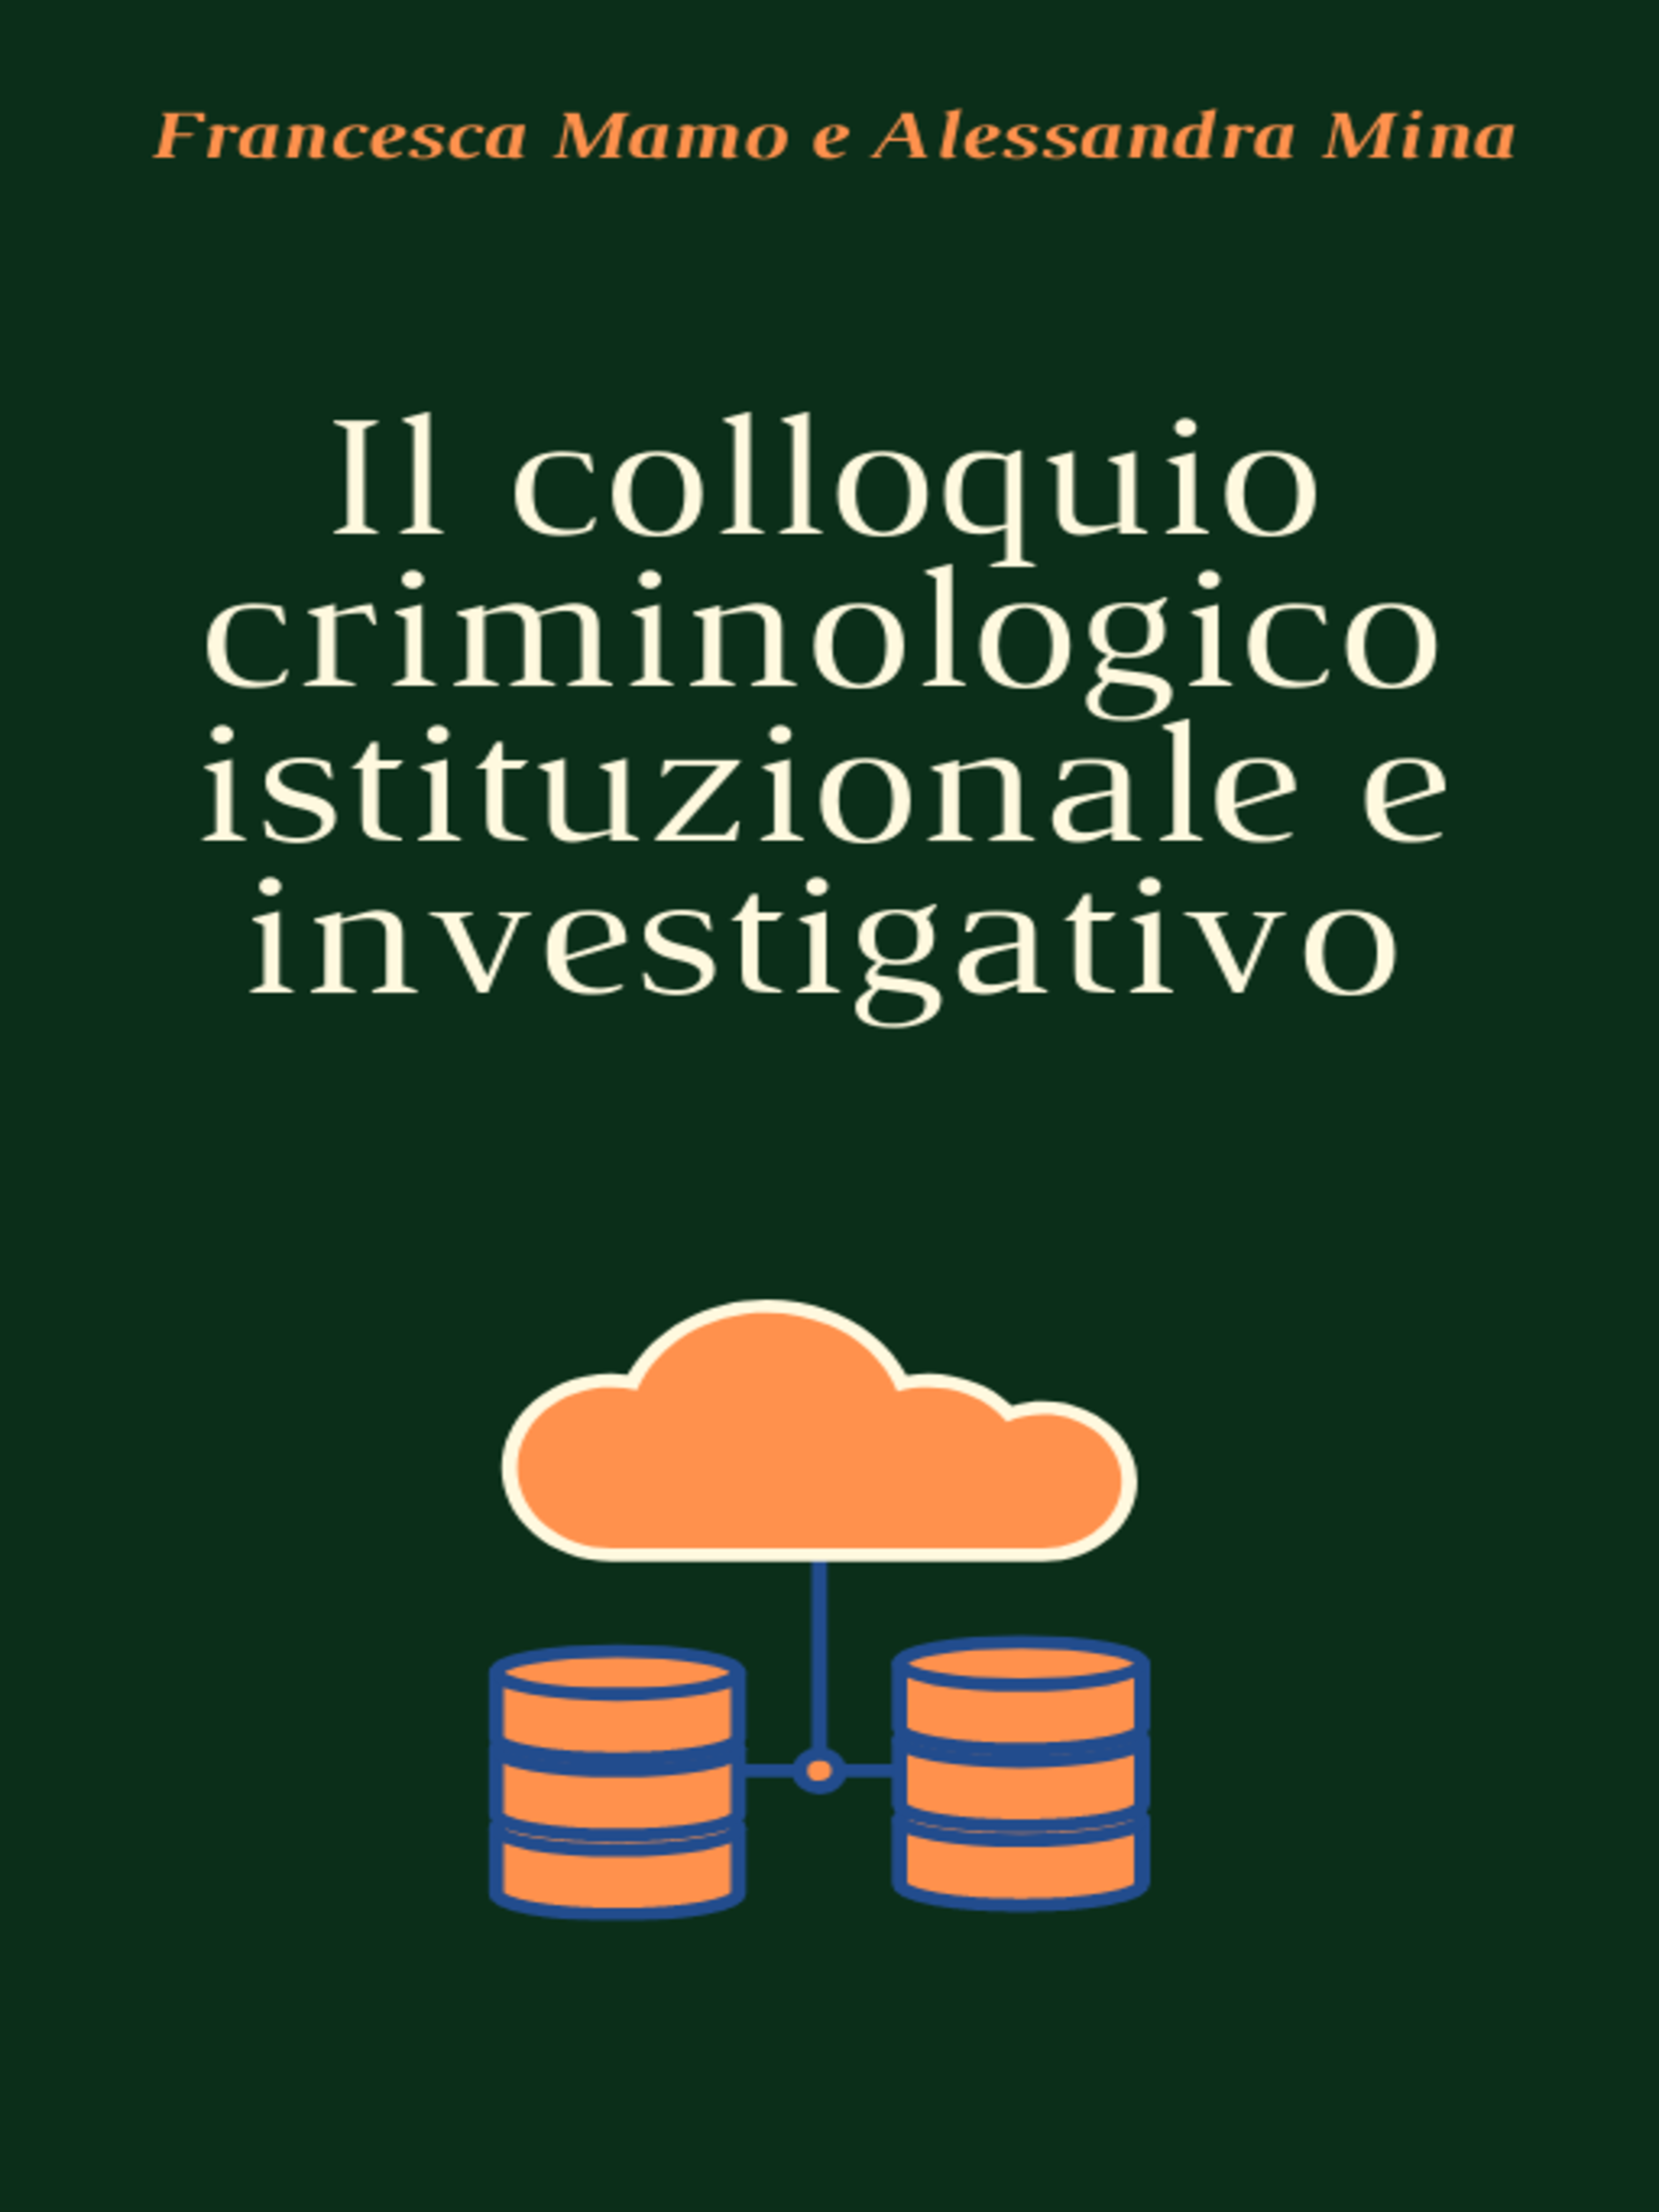 Il colloquio criminologico istituzionale e investigativo